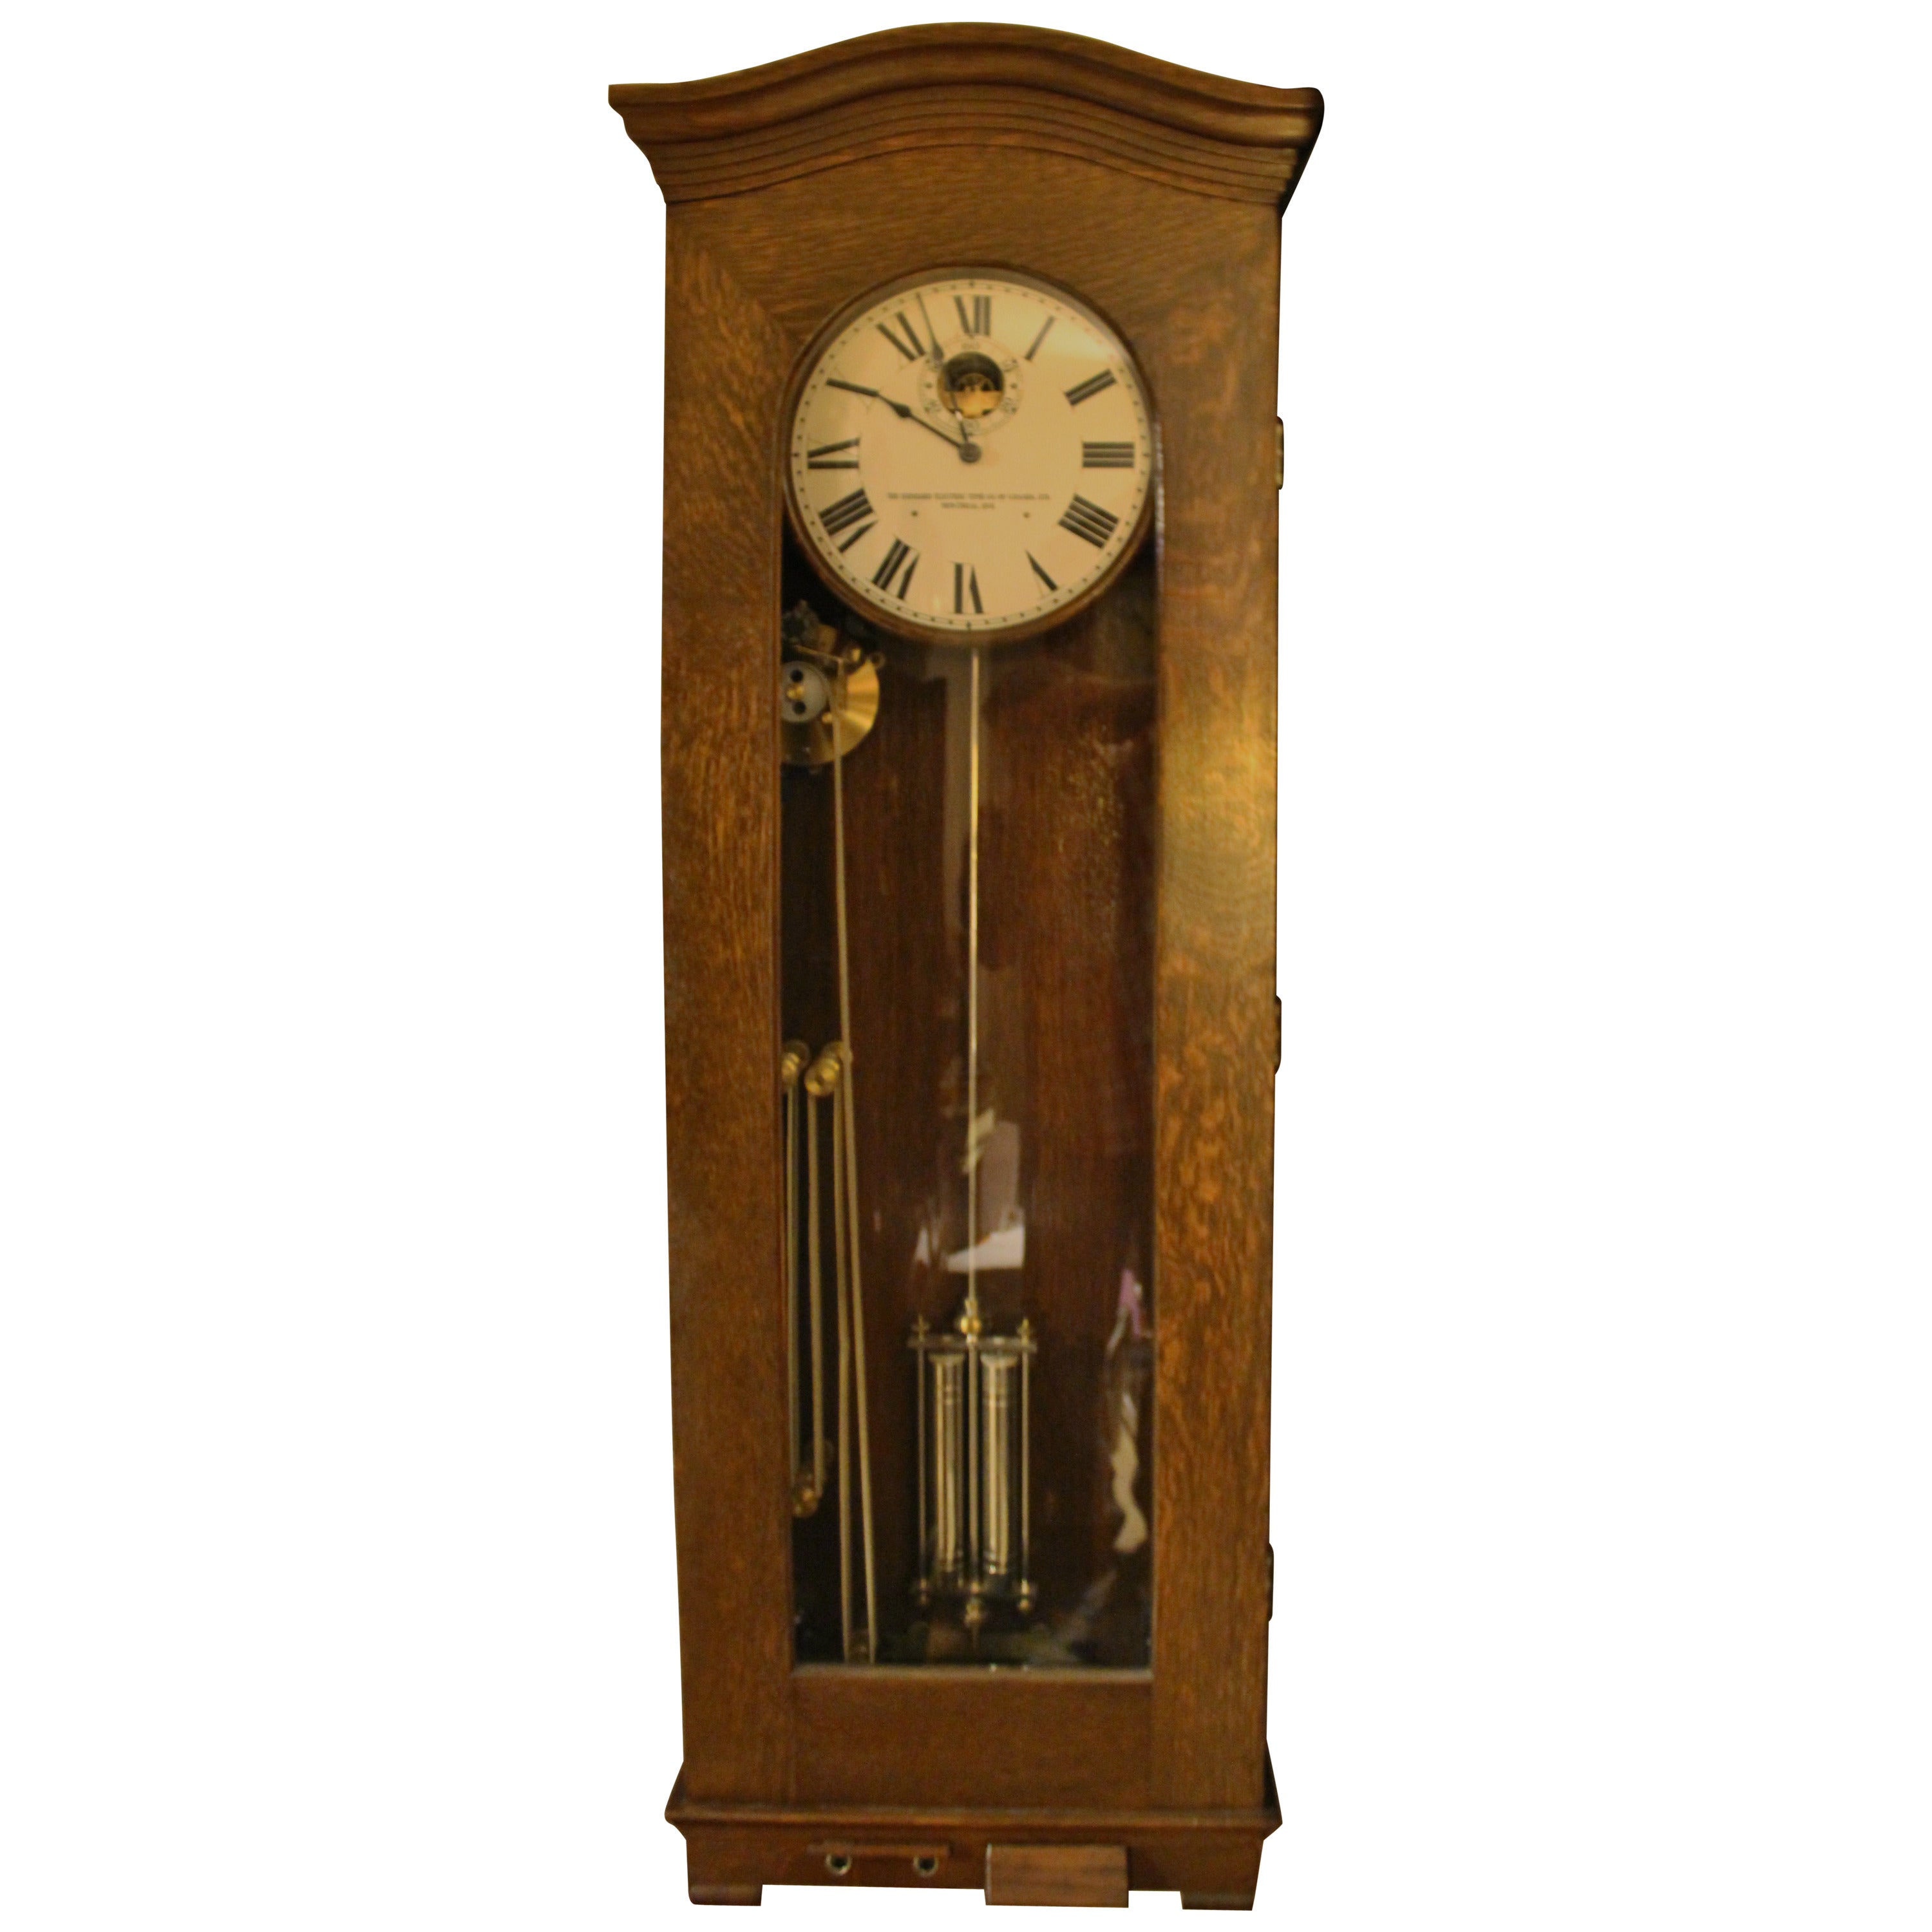 Standard Electric Master Clock, Machine Age